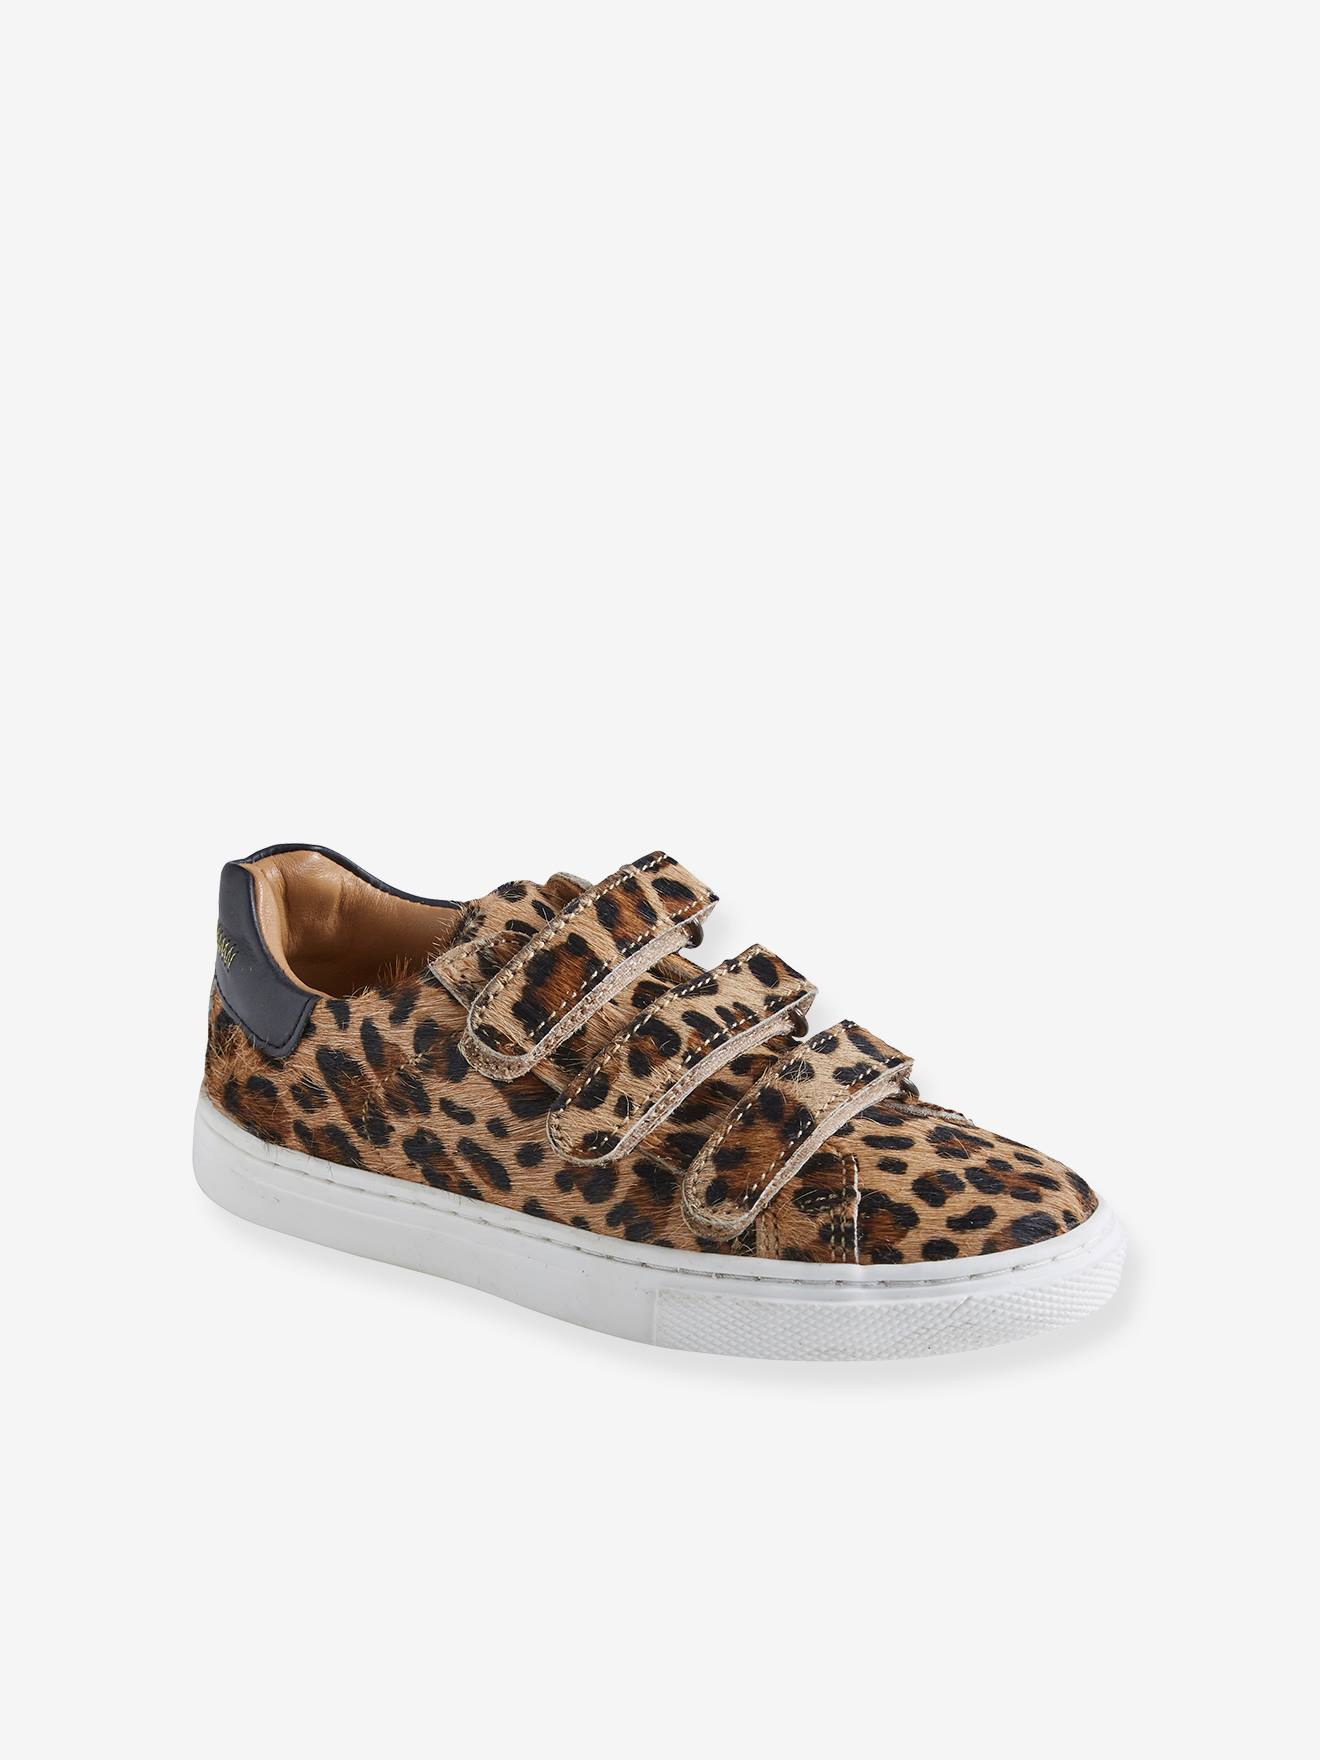 Leren sneakers met klittenband meisje luipaardmotief